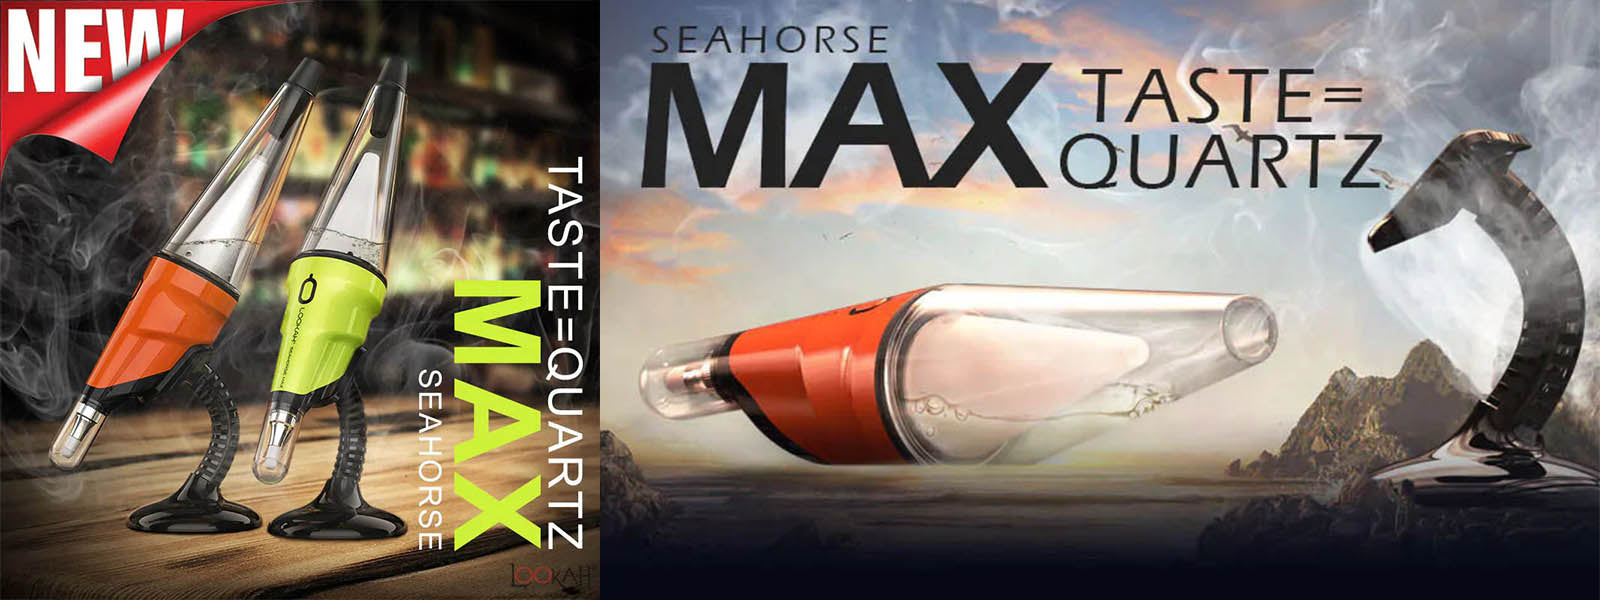 Lookah Seahorse Max